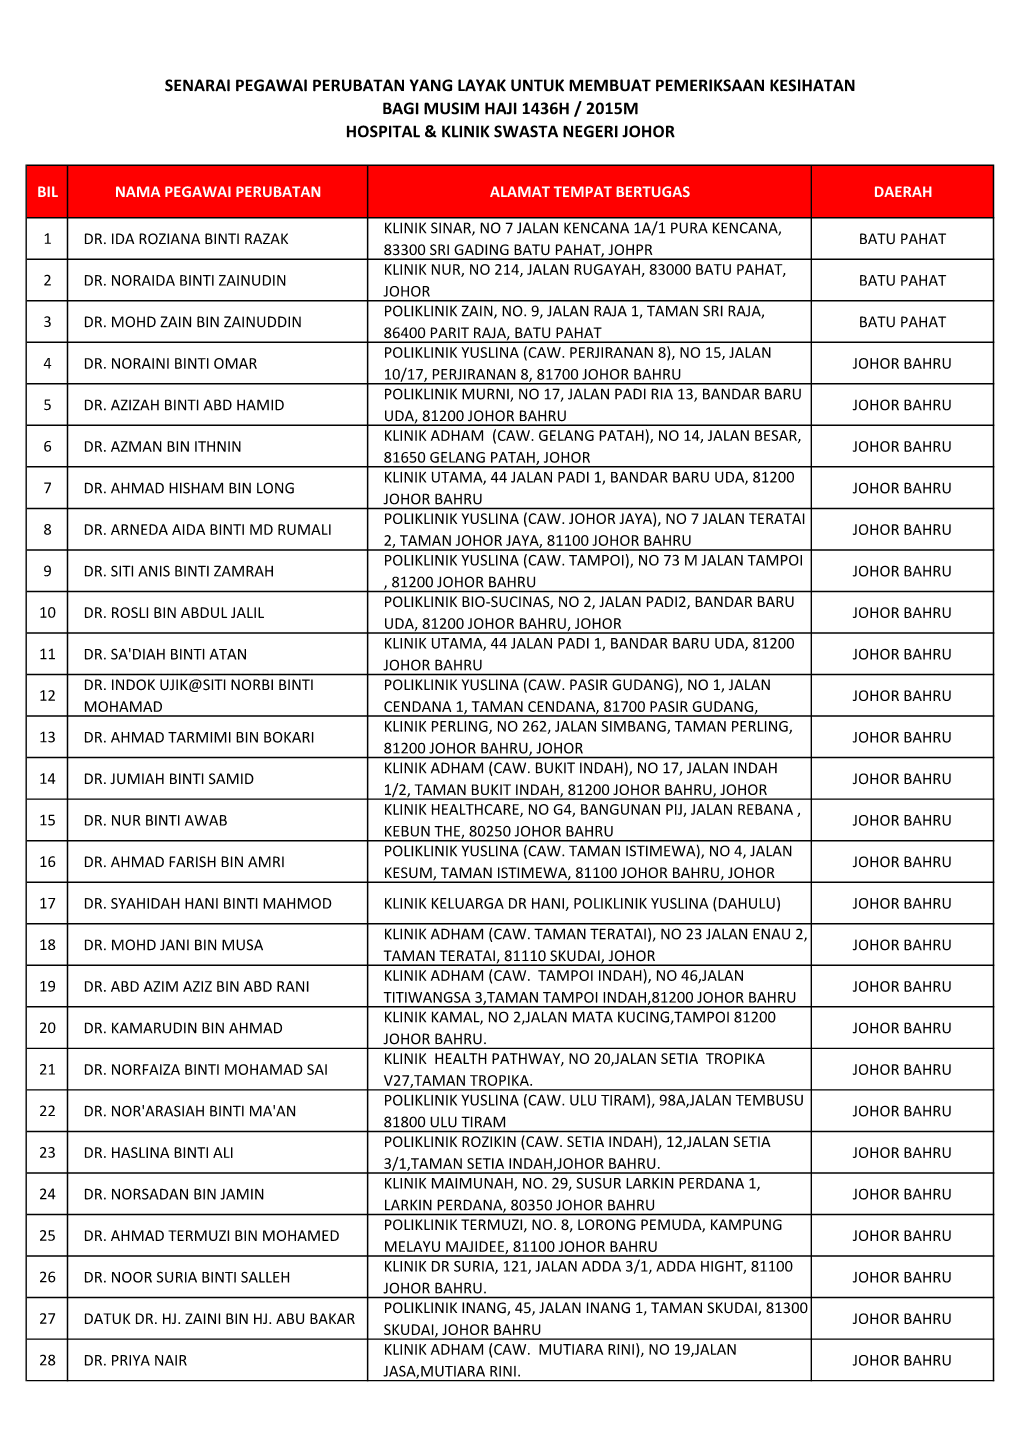 Senarai Pegawai Perubatan Yang Layak Untuk Membuat Pemeriksaan Kesihatan Bagi Musim Haji 1436H / 2015M Hospital & Klinik